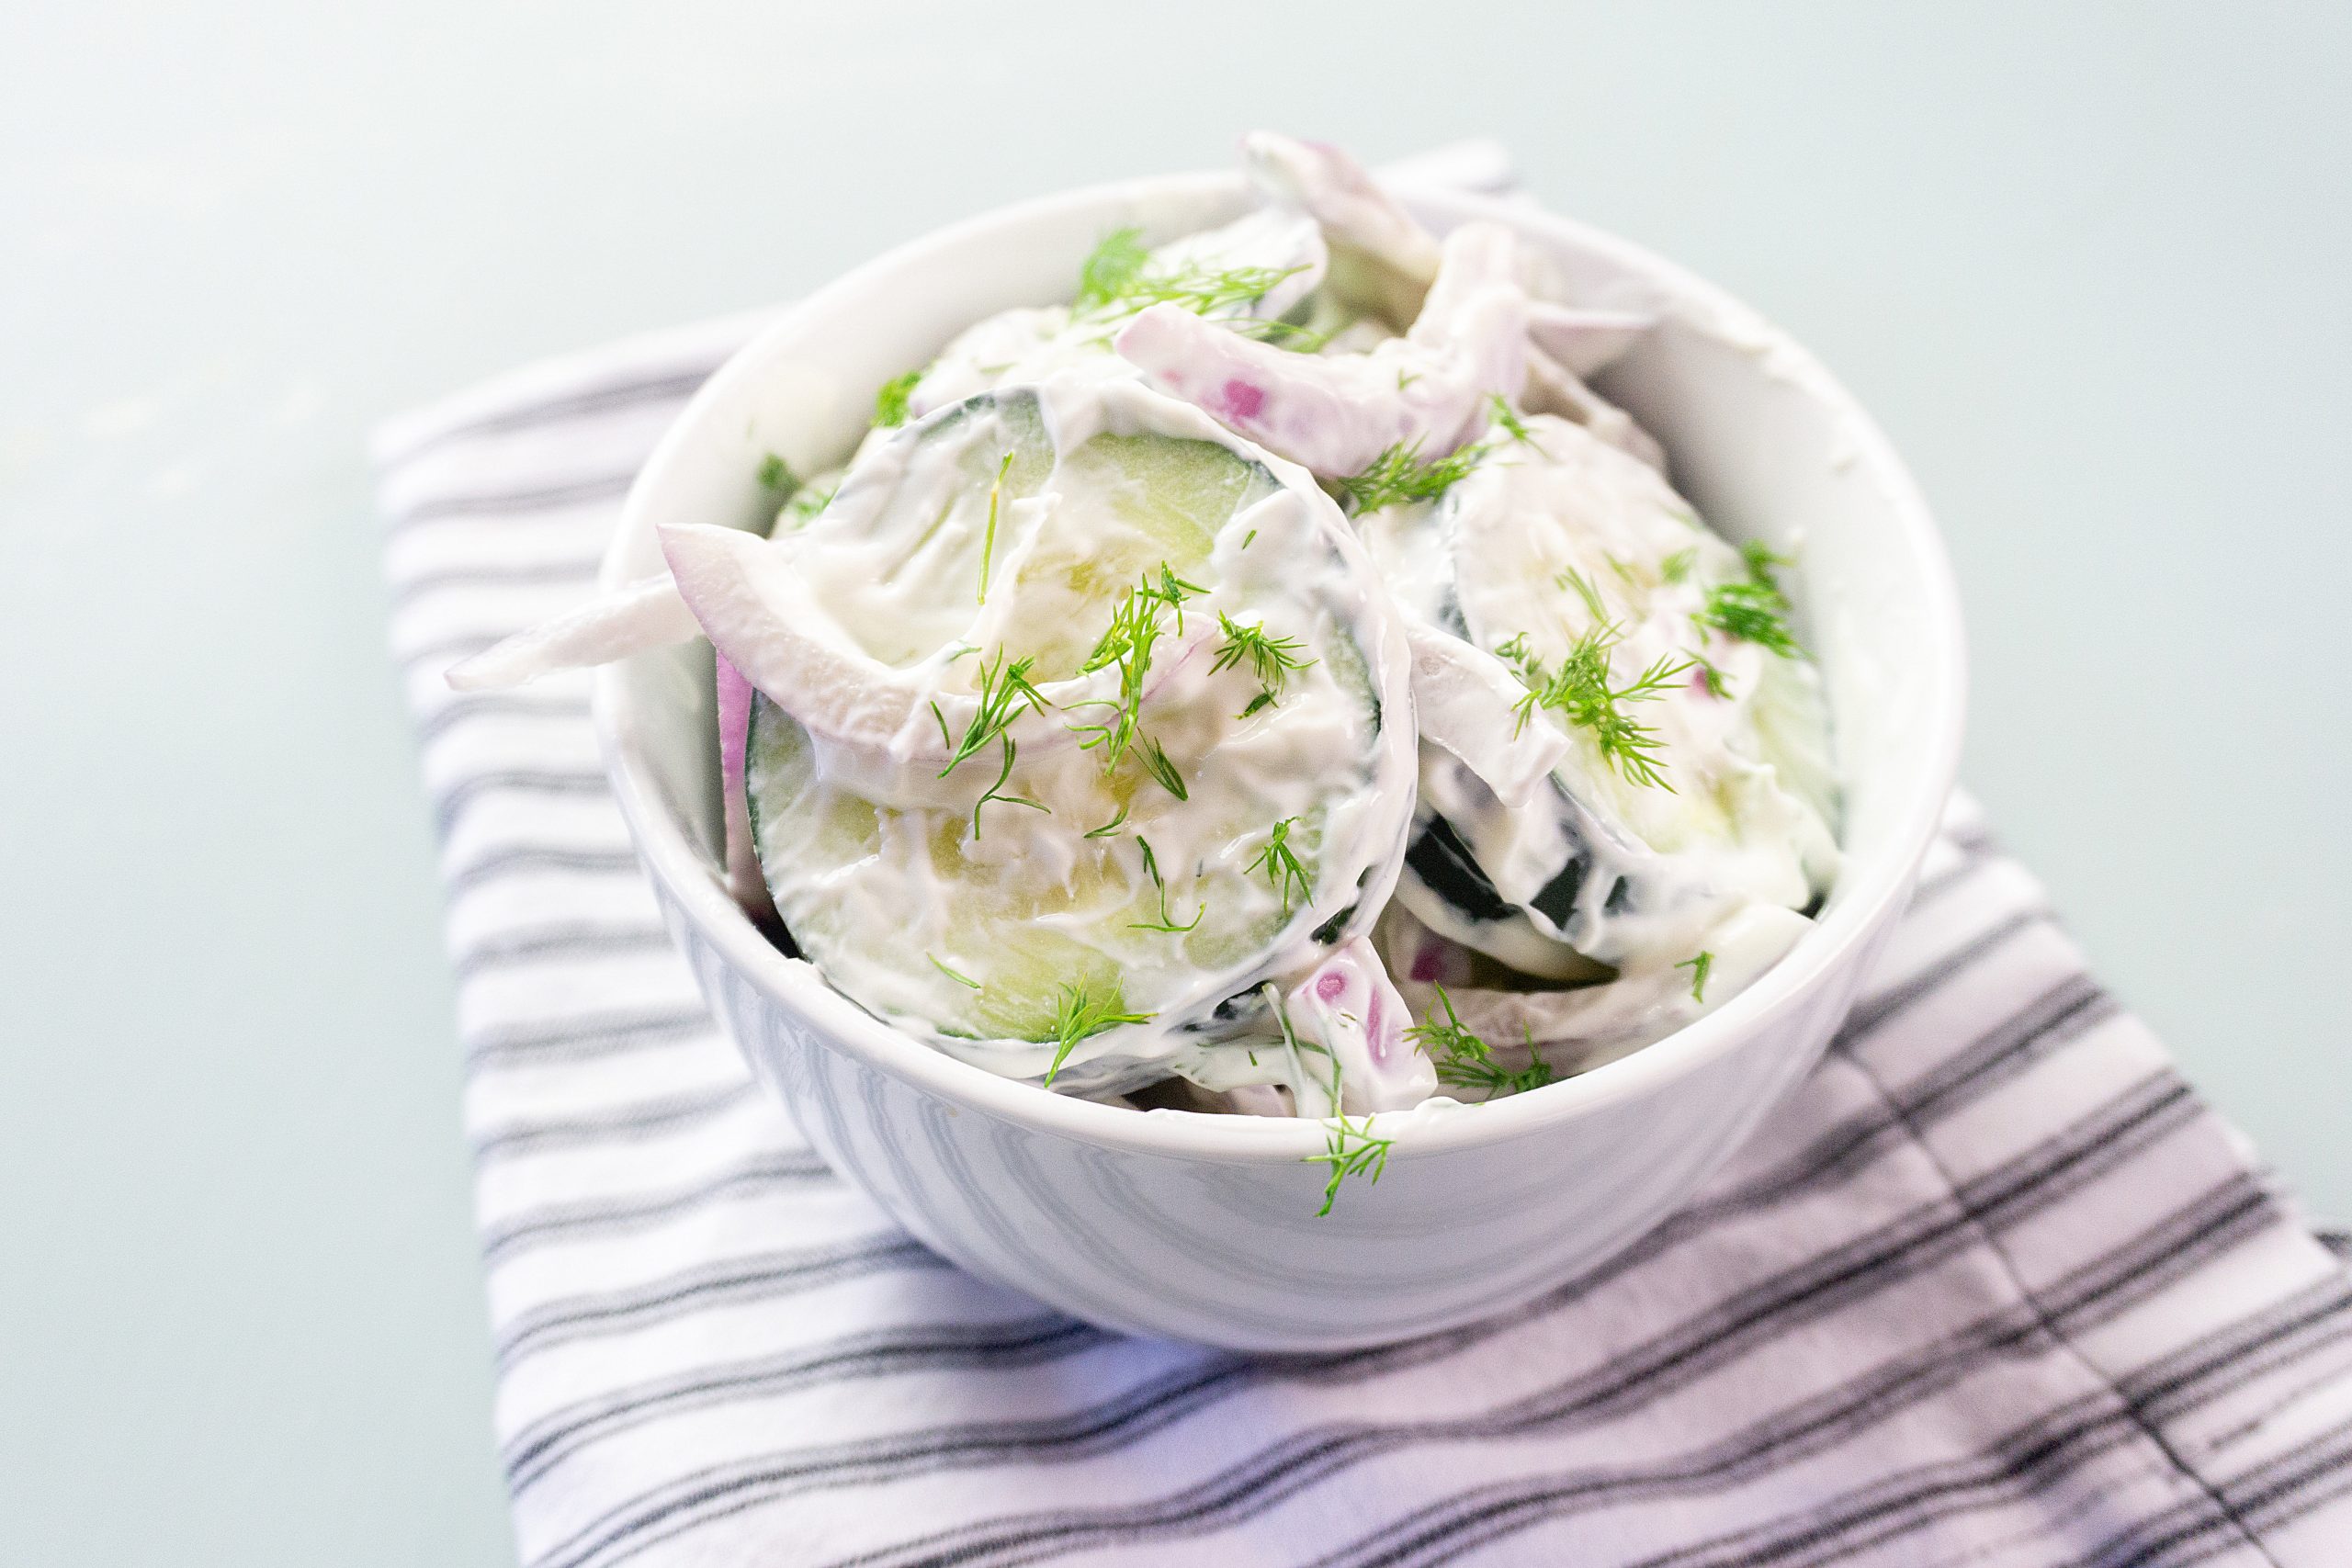 creamy cucumber salad recipe in a white bowl